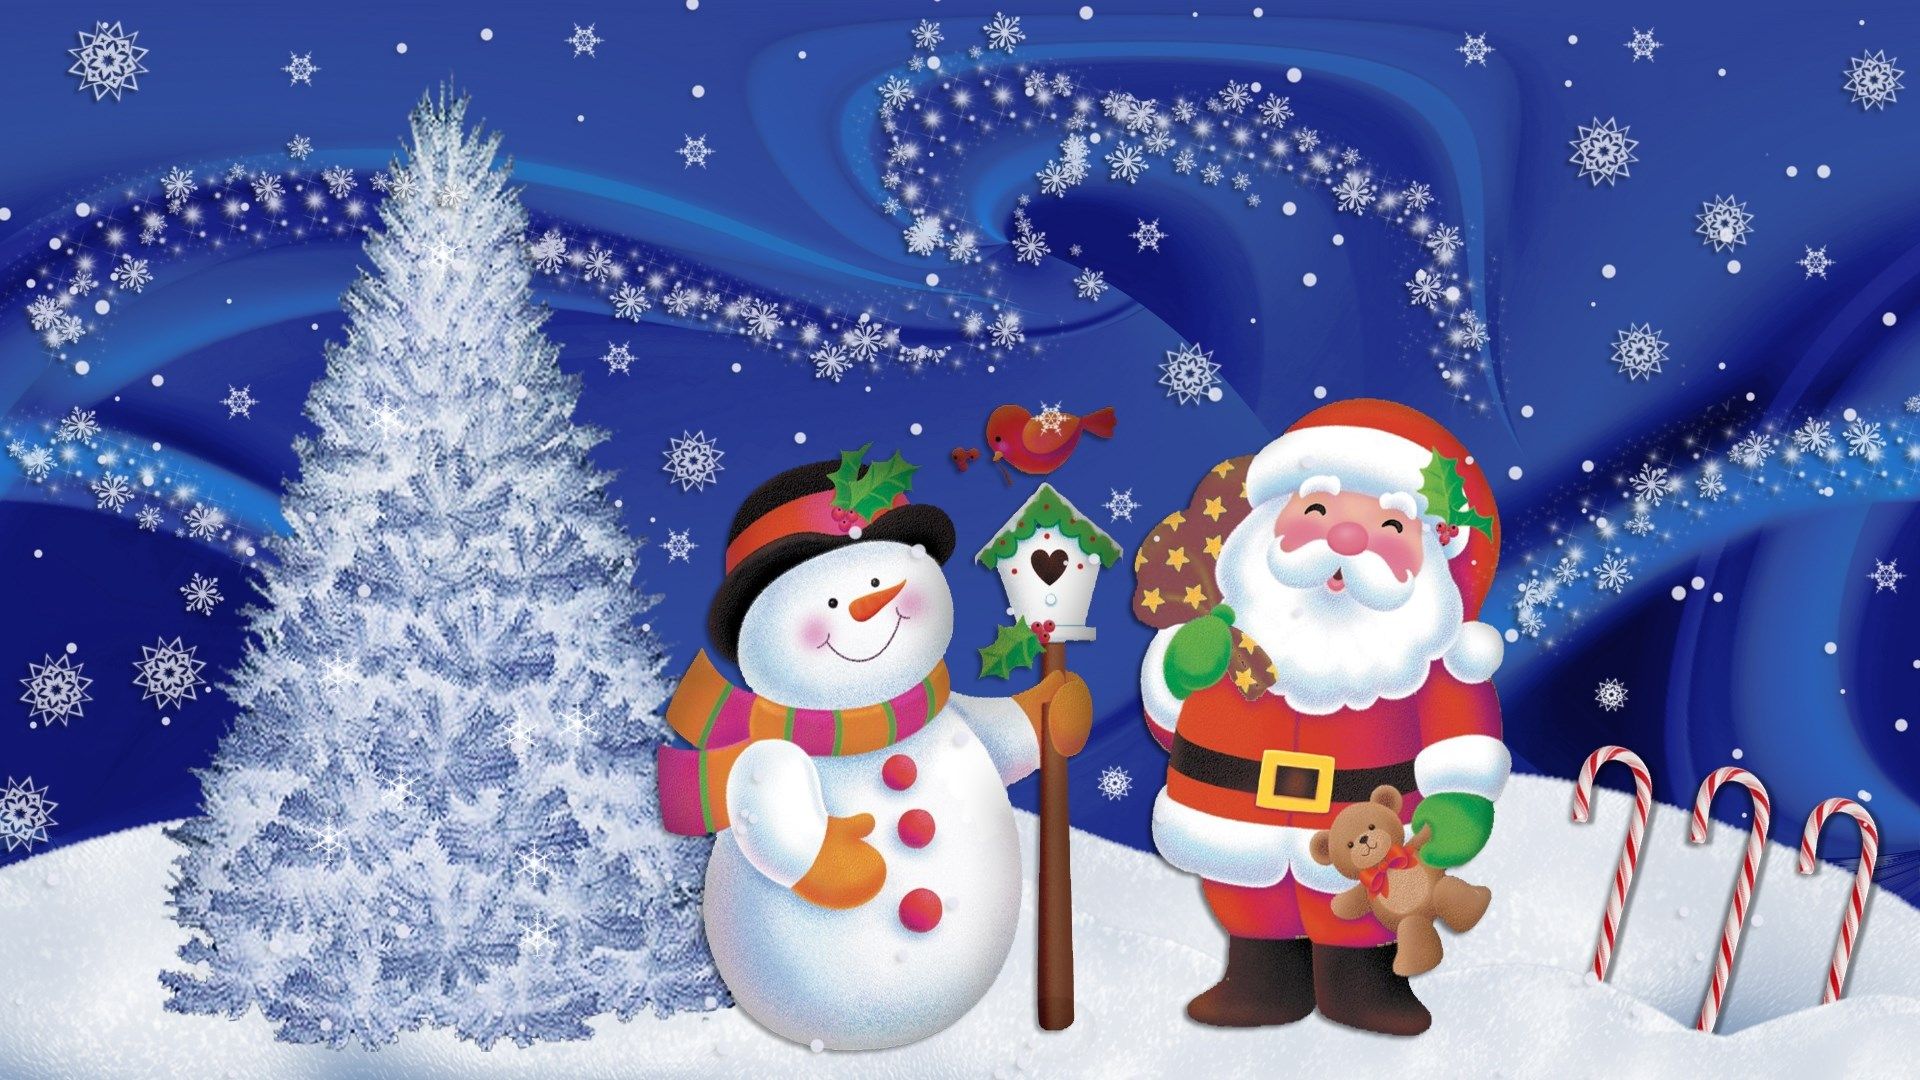 23 Opslagstavlen Mini-julefrokost I anledning af julen holder Klubben en ekstra lille julefrokost fredag d. 23. december kl. 11.